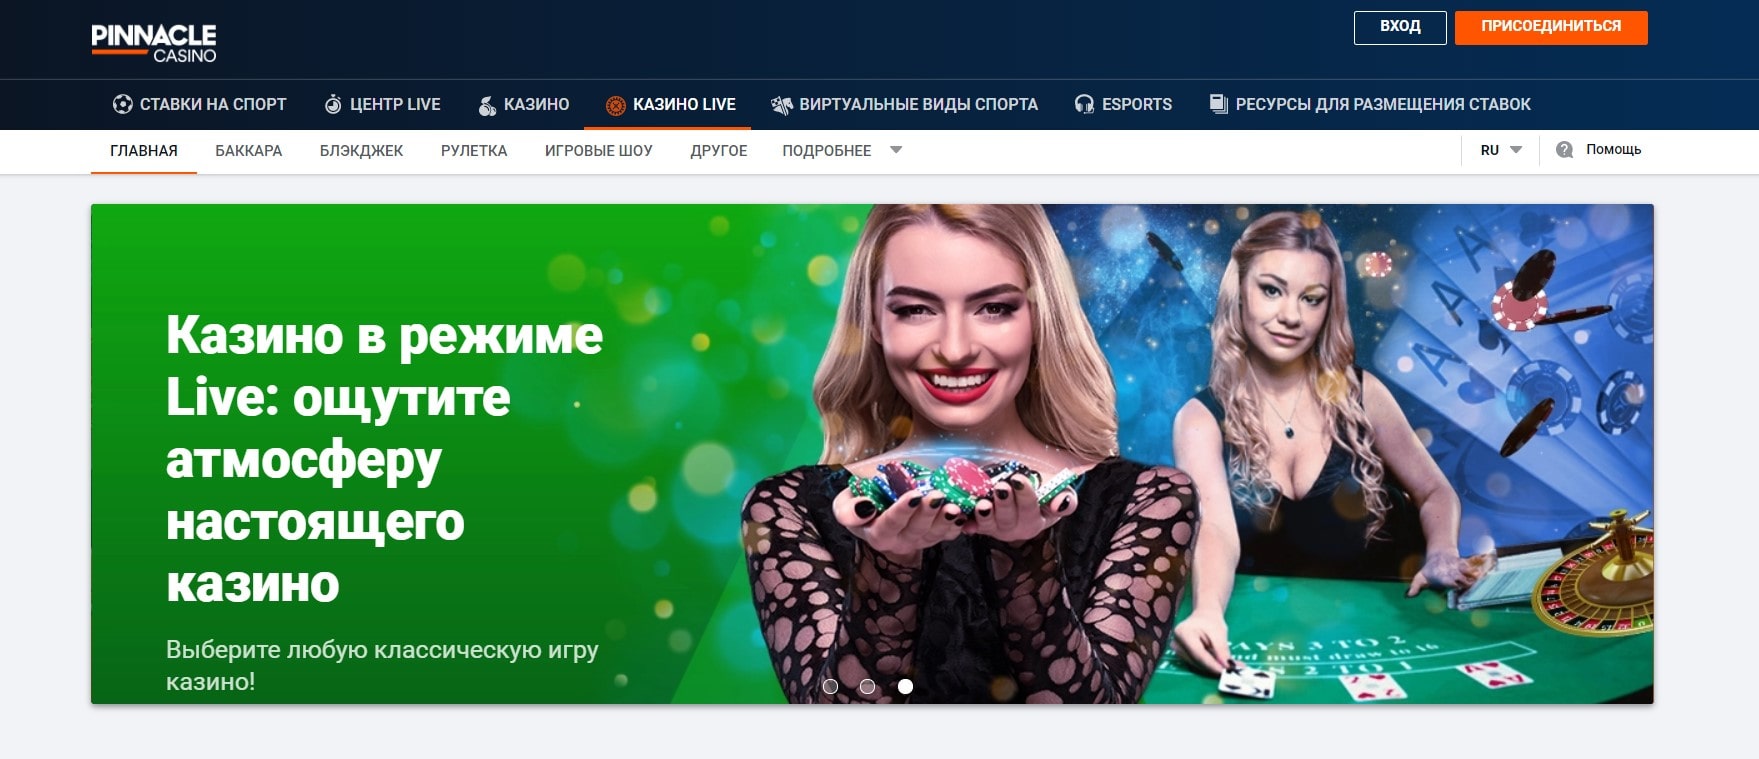 pinnacle casino официальный сайт скачать бесплатно русская